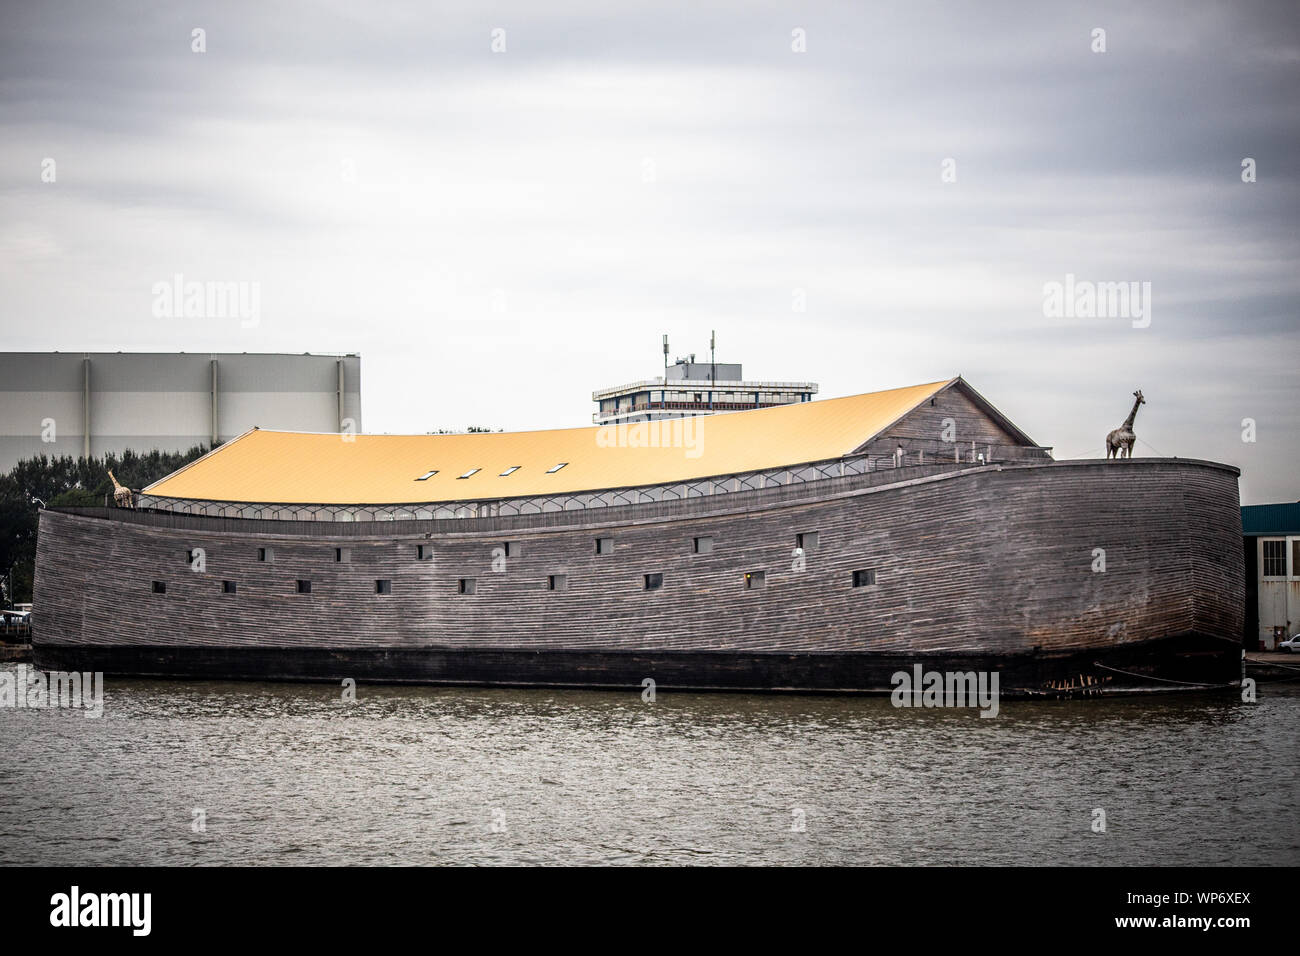 KRIMPEN AAN DE IJSSEL, Niederlande - September 3, 2018: Blick auf die Arche Noah Replik entlang des Flusses in der Niederlande gesehen. Stockfoto